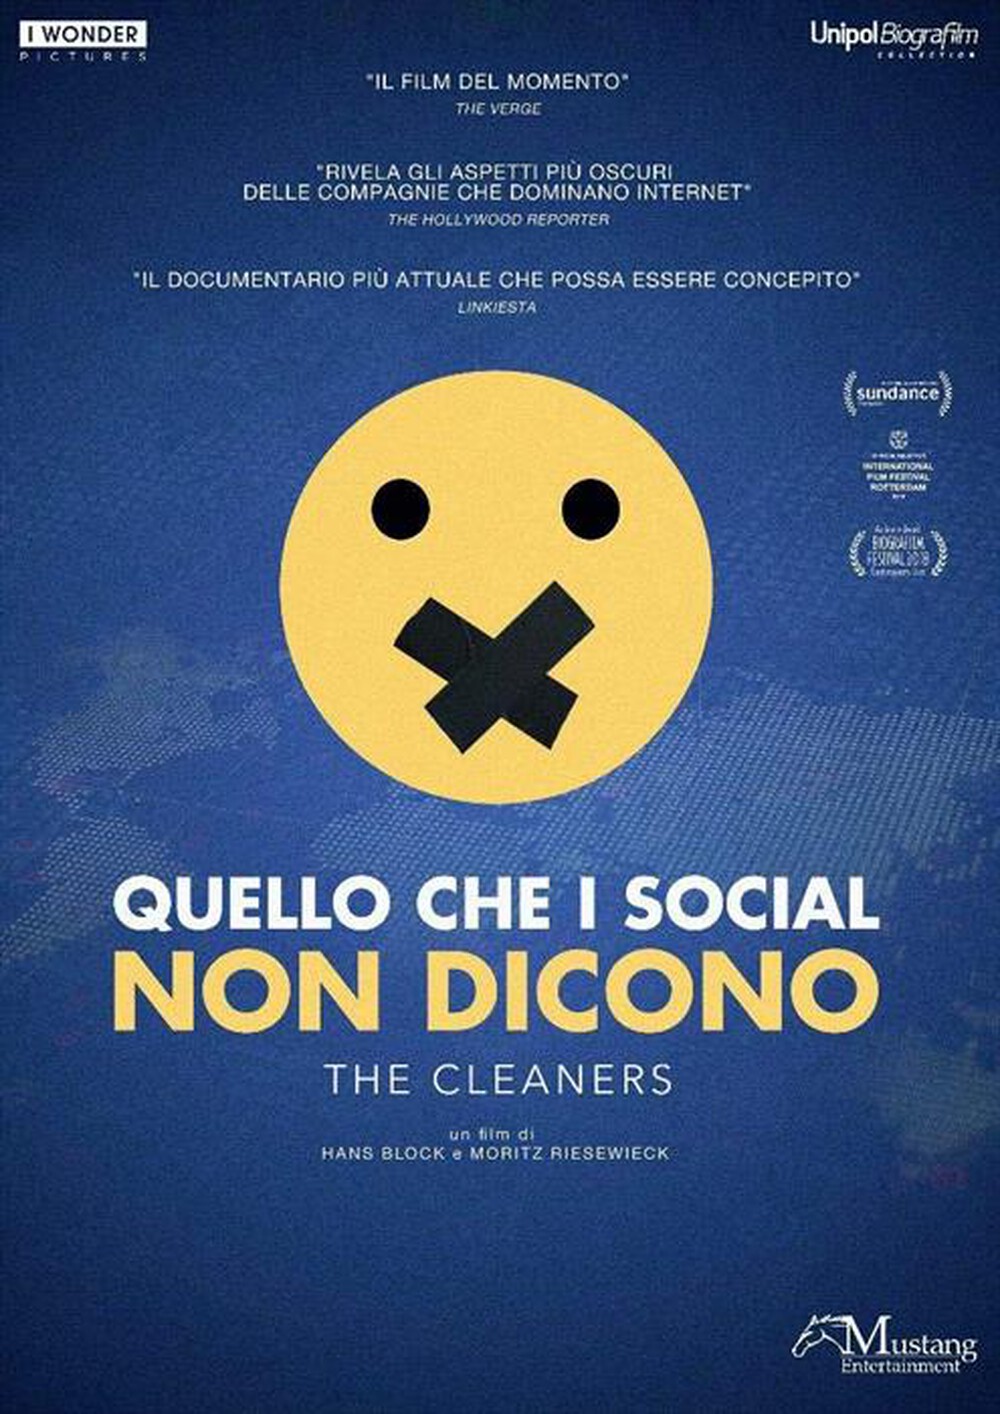 "I Wonder - Cleaners (The) - Quello Che I Social Non Dicono"